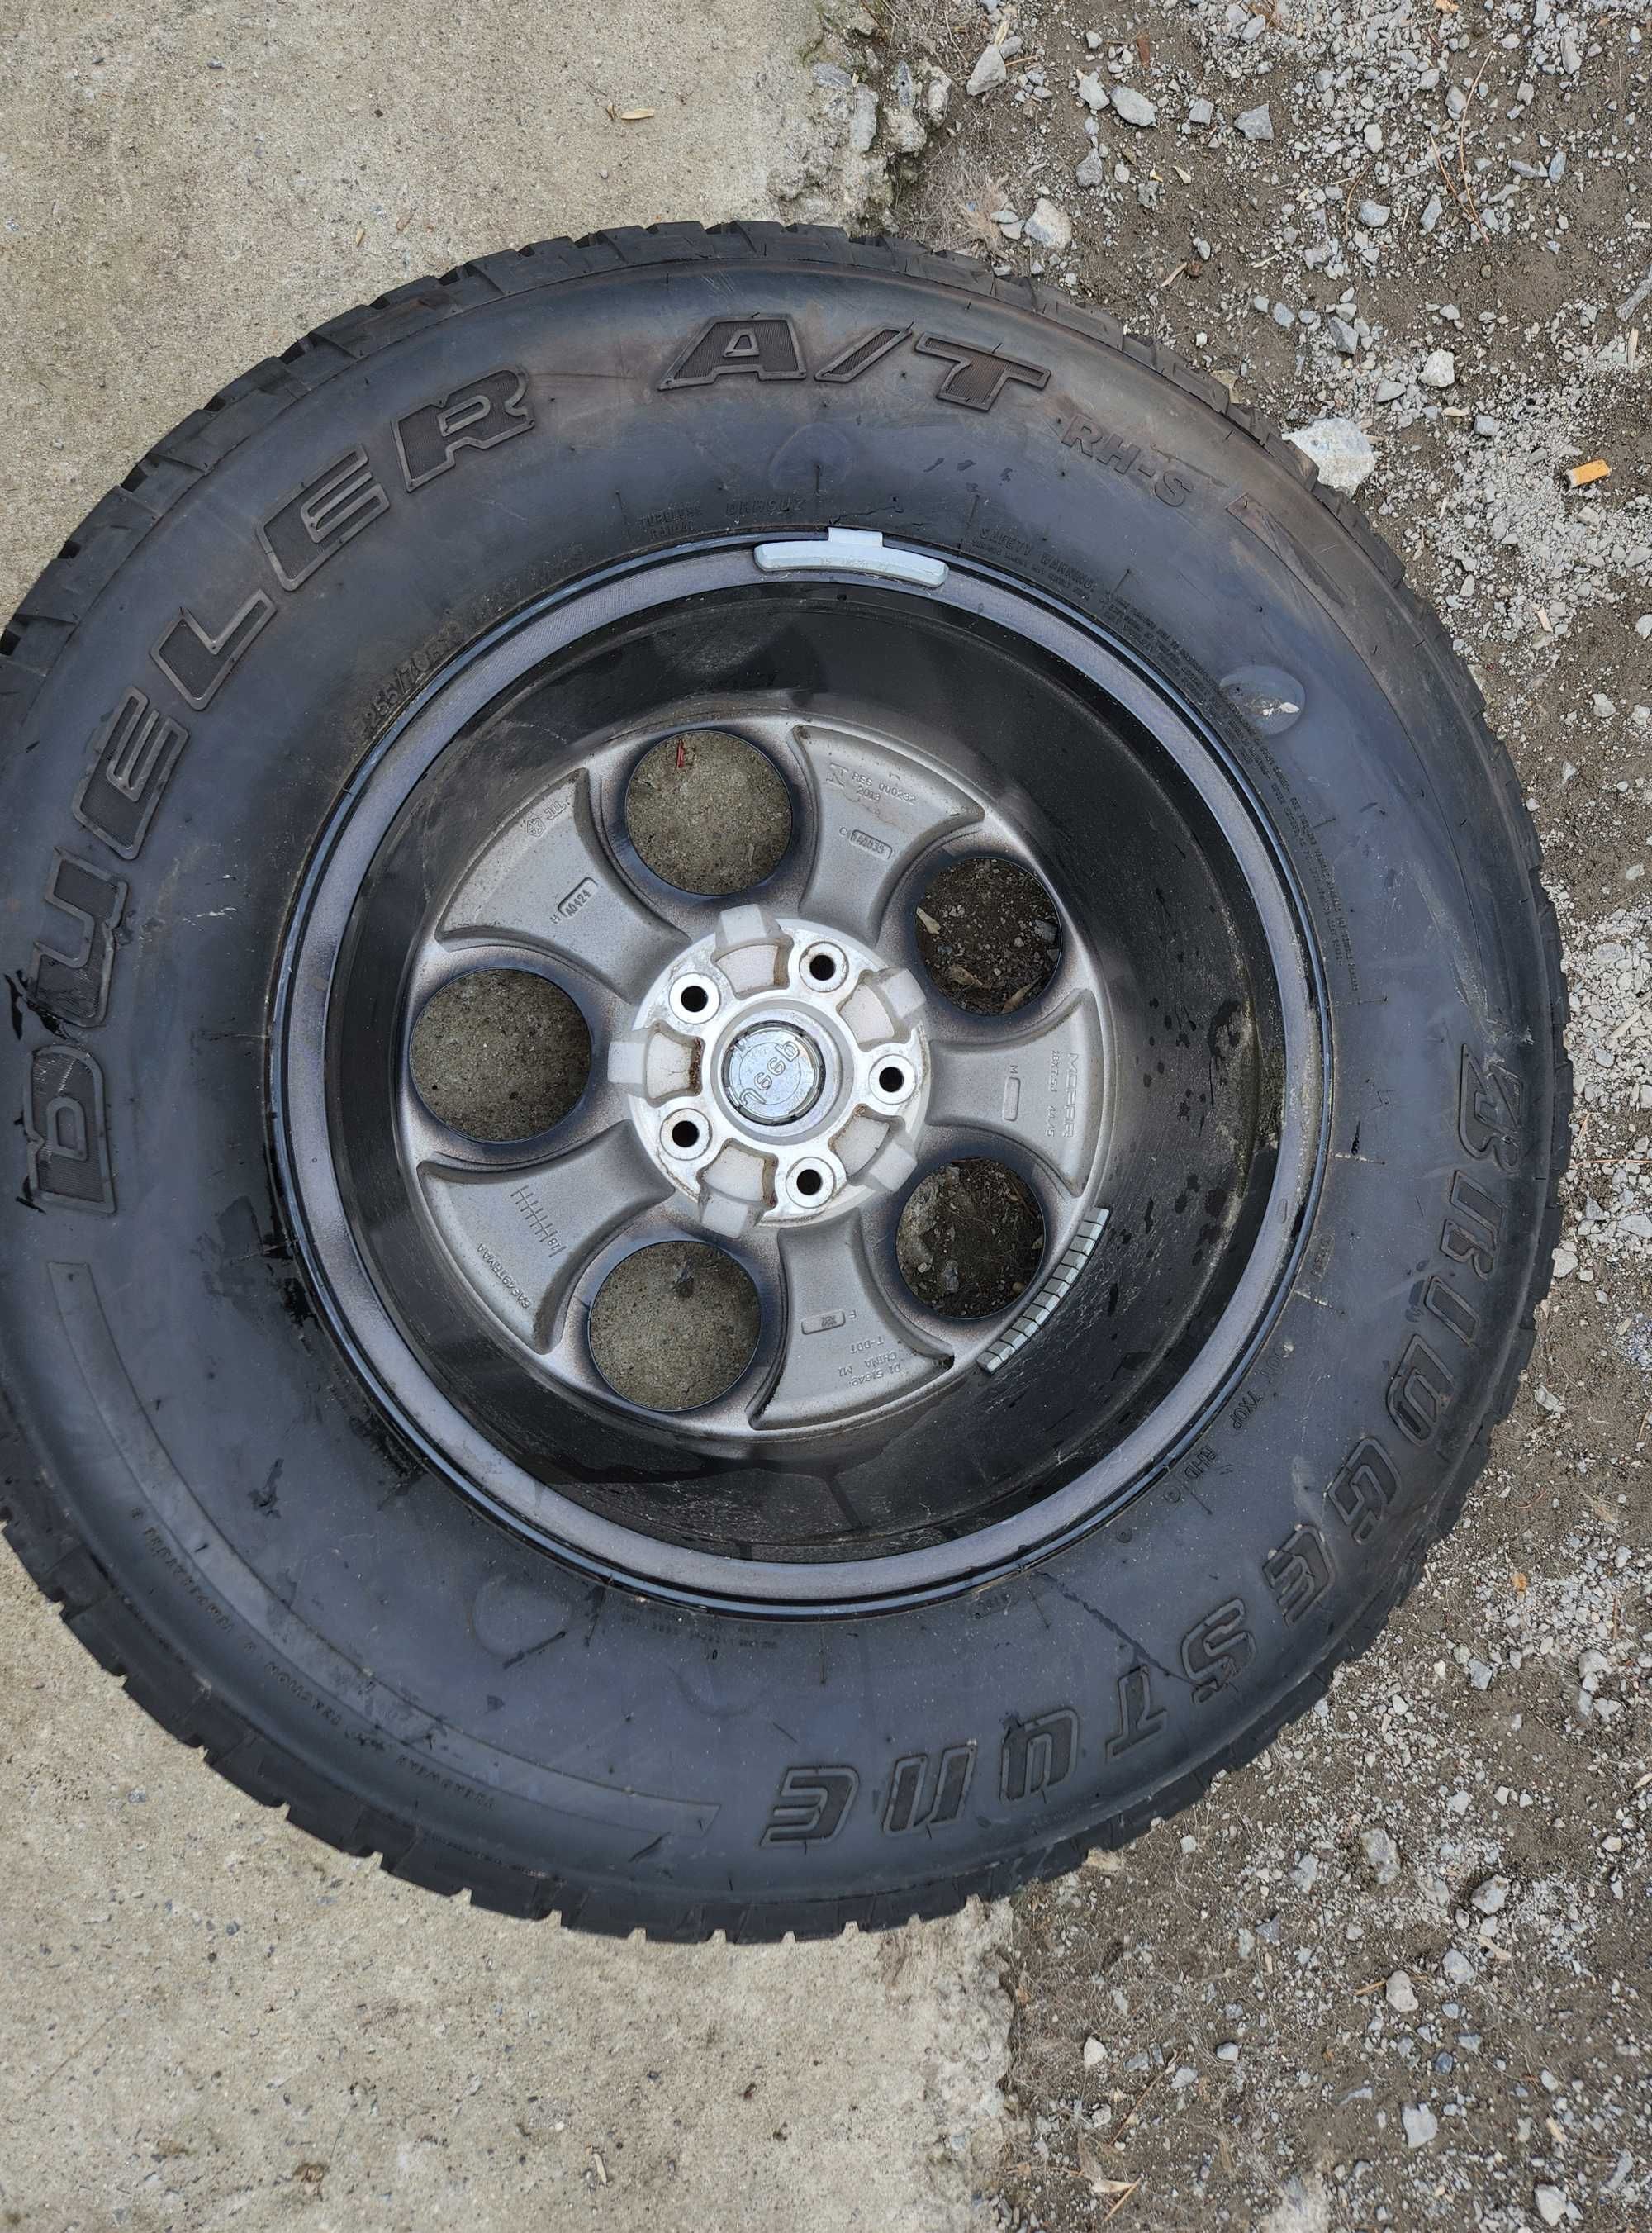 5 Bridgestone гуми и джанти за Jeep Wrangler с размери 255/70/18